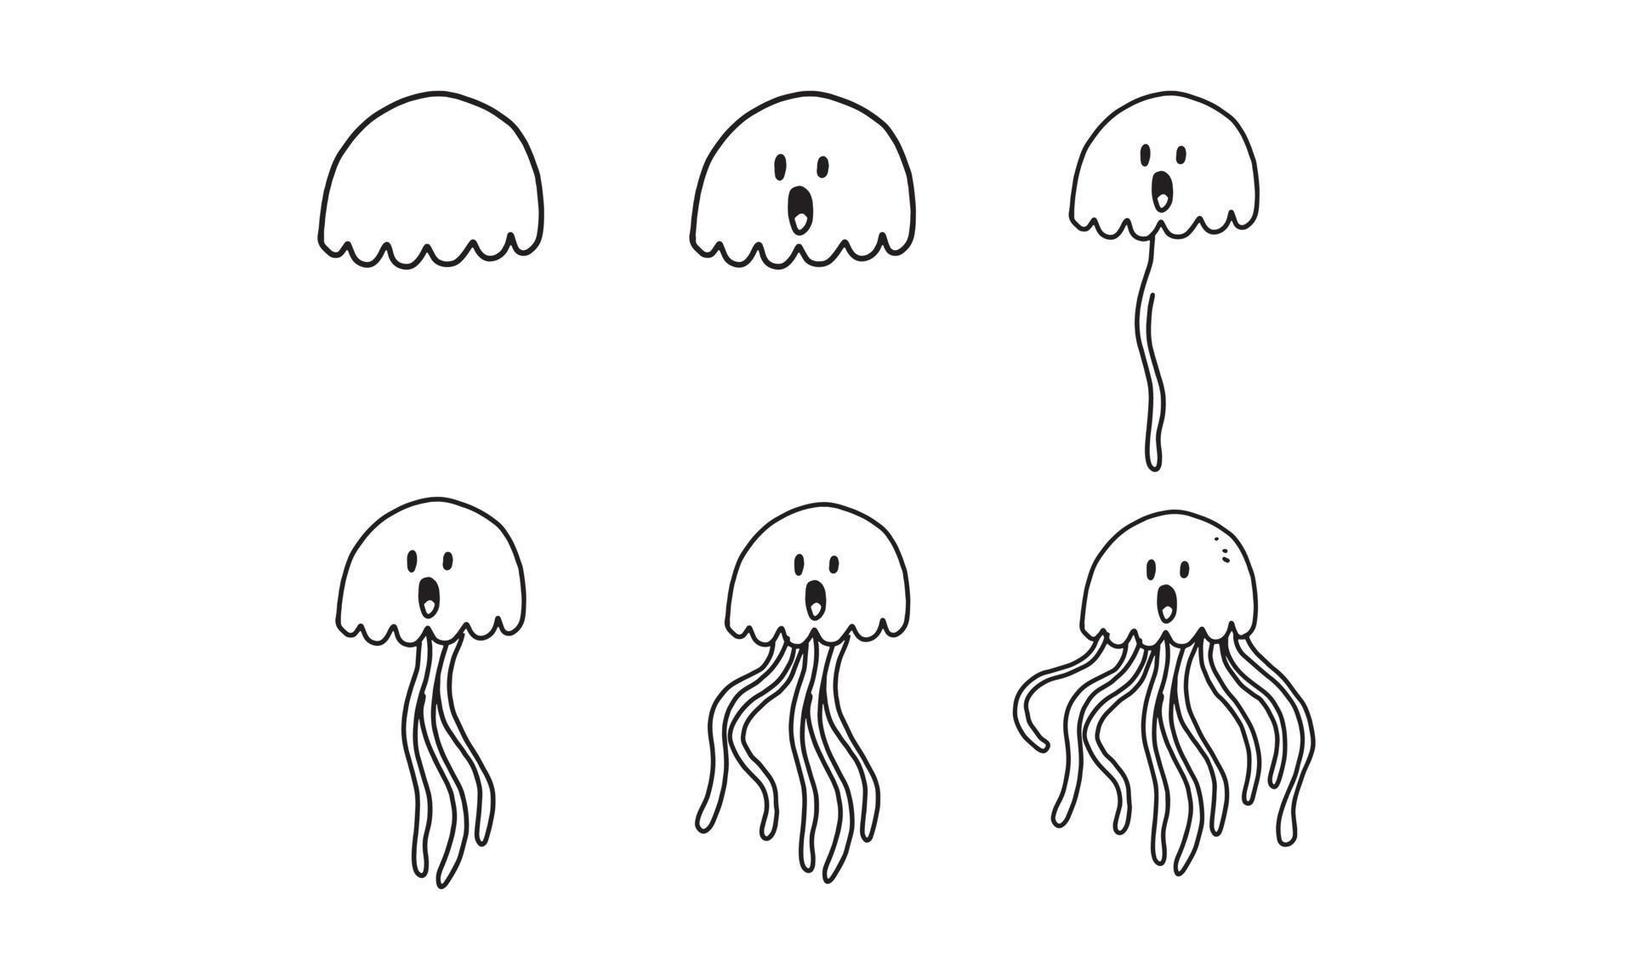 come disegnare una medusa carina passo dopo passo. collezione di personaggi da colorare di cartoni animati animali marini per bambini. illustrazione di disegno animale facile e divertente per la creatività dei bambini. guida al disegno nel disegno vettoriale. vettore